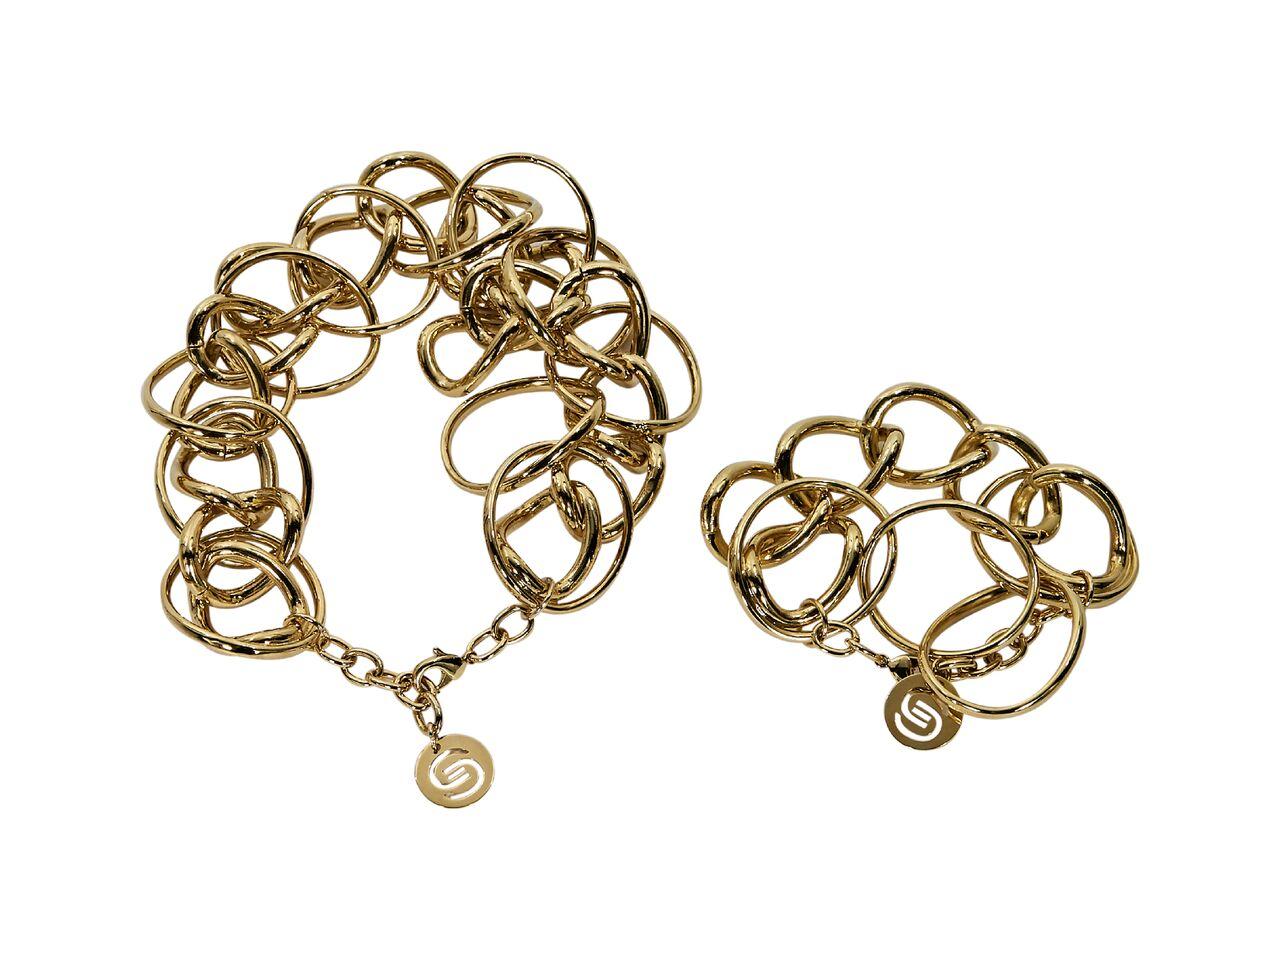 Product details:  Matching goldtone necklace and bracelet set by Elie Saab.  Adjustable lobster clasp closures.  Goldtone hardware.  Dust bag included.  Necklace: 14